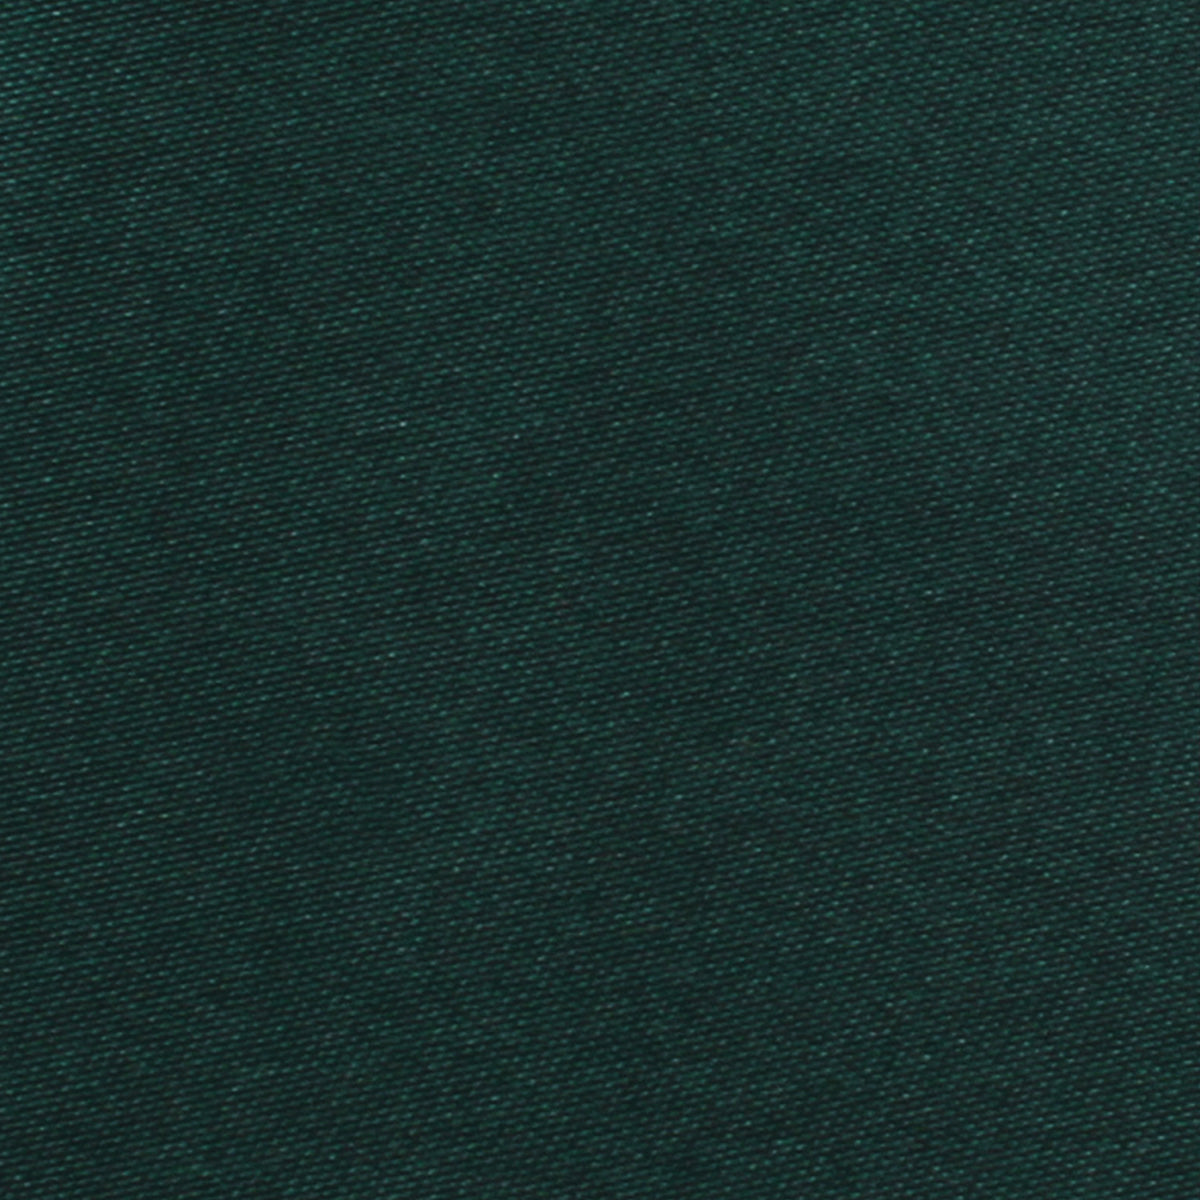 Dark Green Satin Necktie Fabric